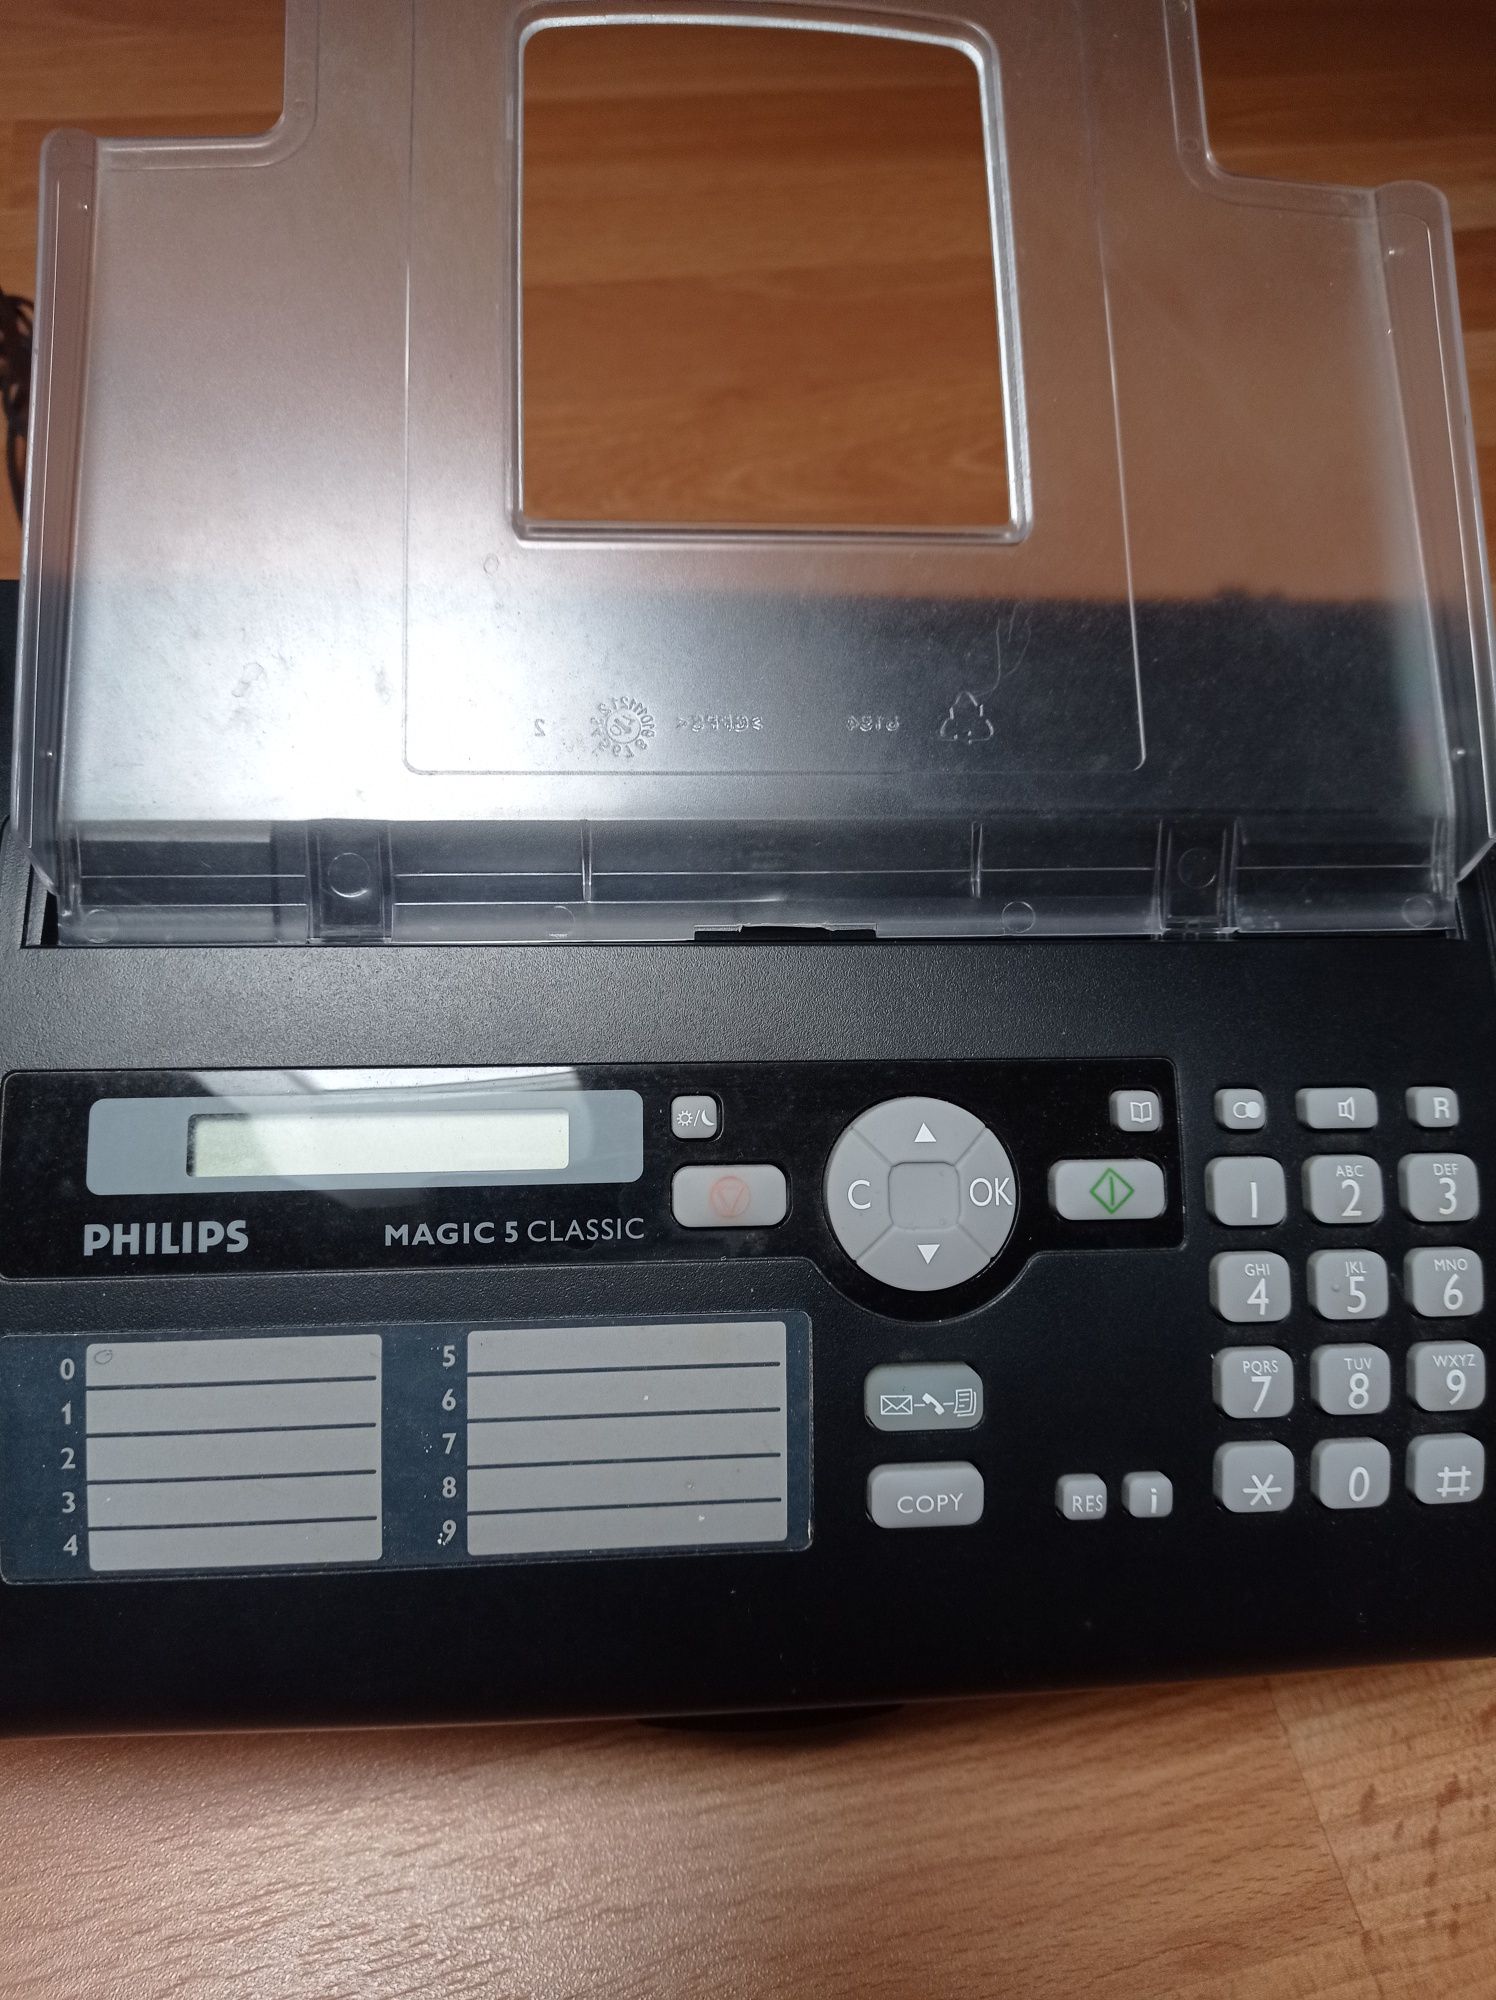 Fax Philips Magic 5